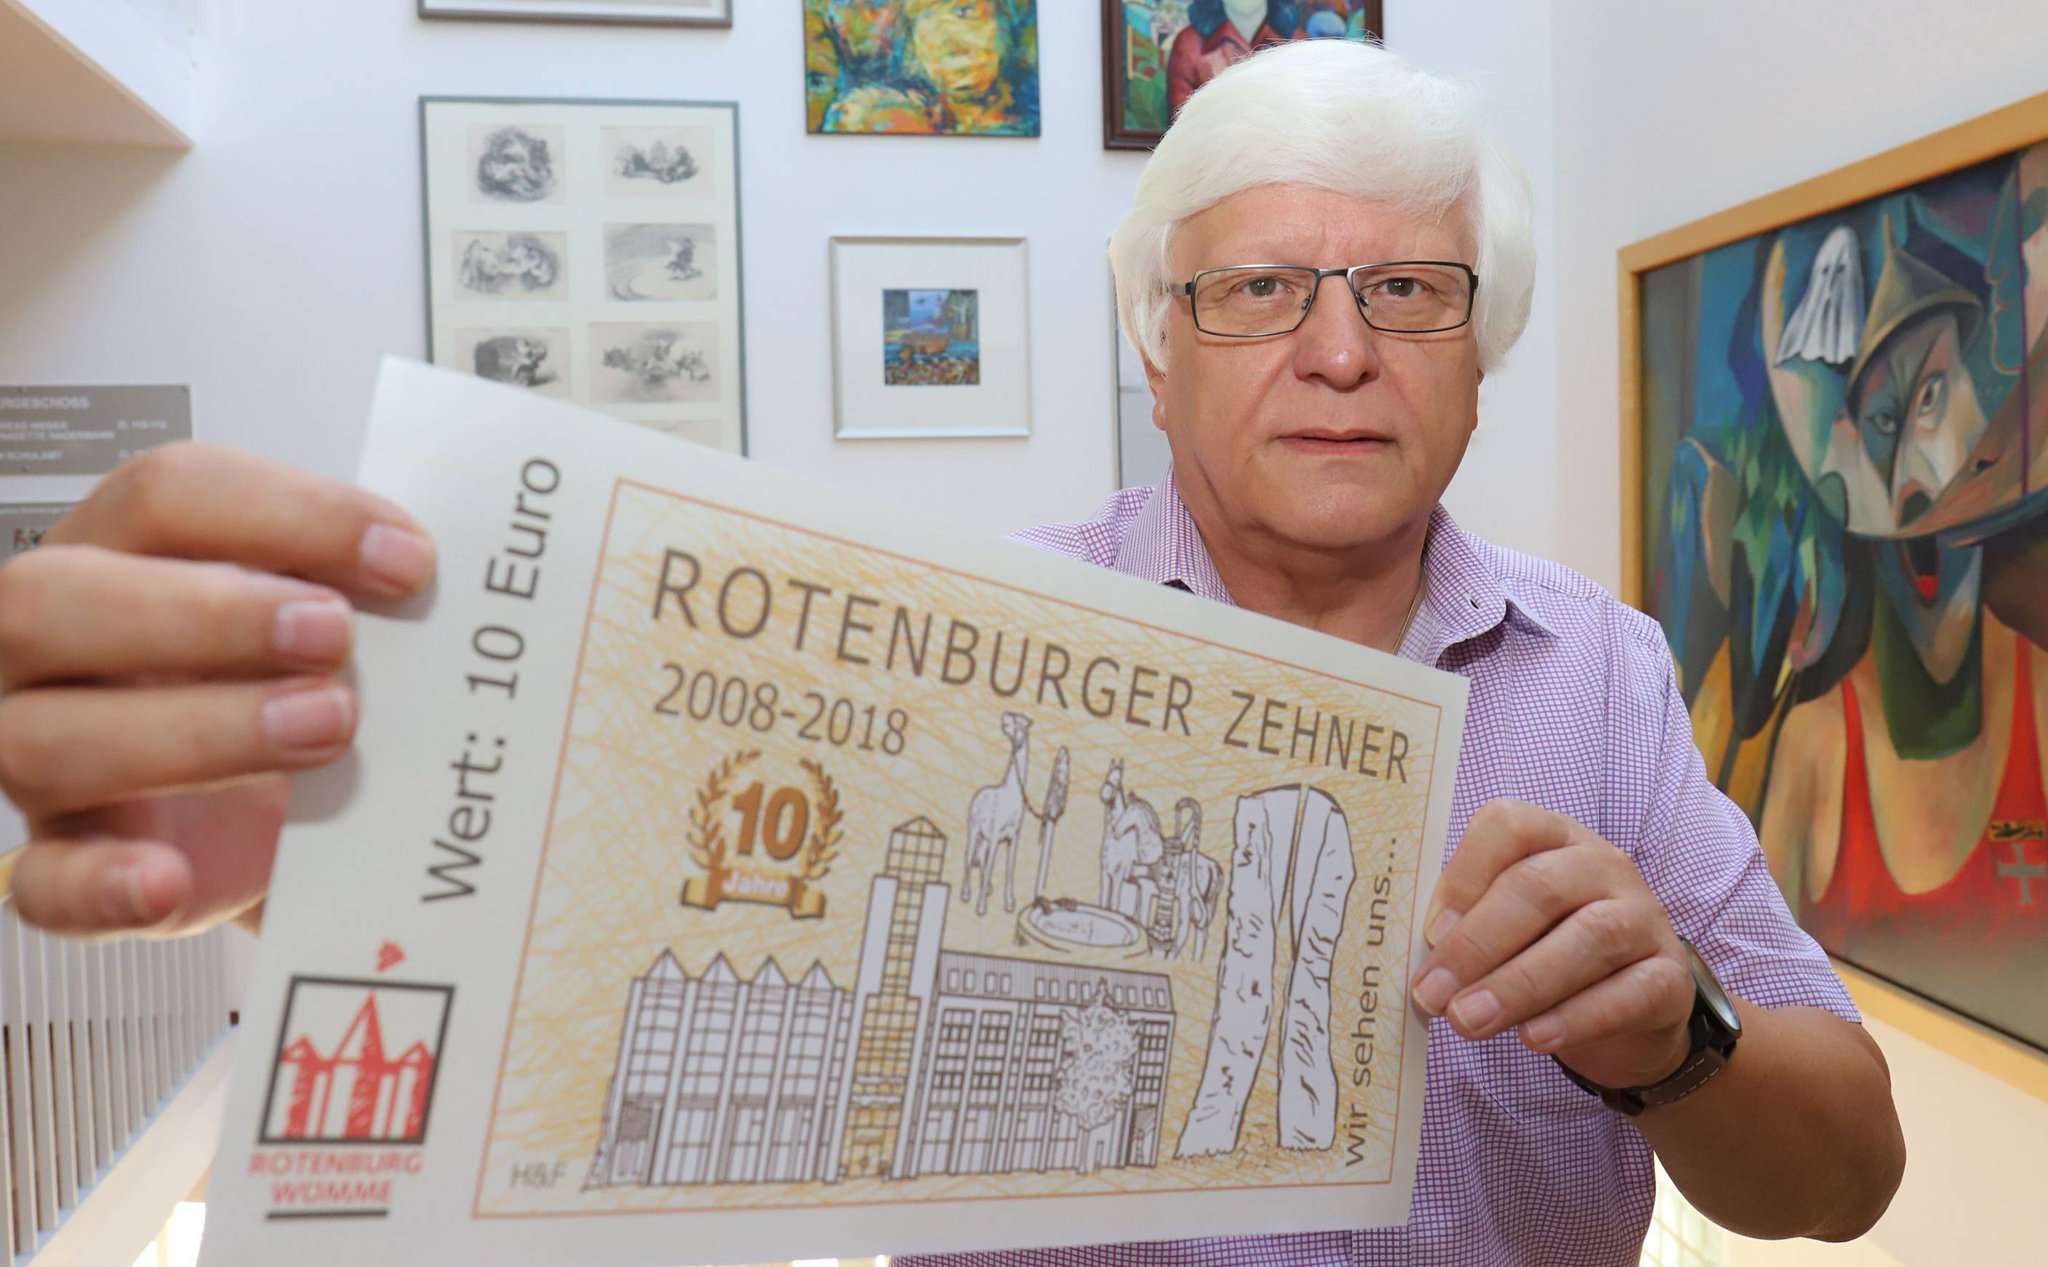 Heinz Gehnke präsentiert stolz den neuen Rotenburger Zehner im Großformat. Das Original hat die Größe eines Geldscheins und passt bequem in jedes Portemonnaie. 